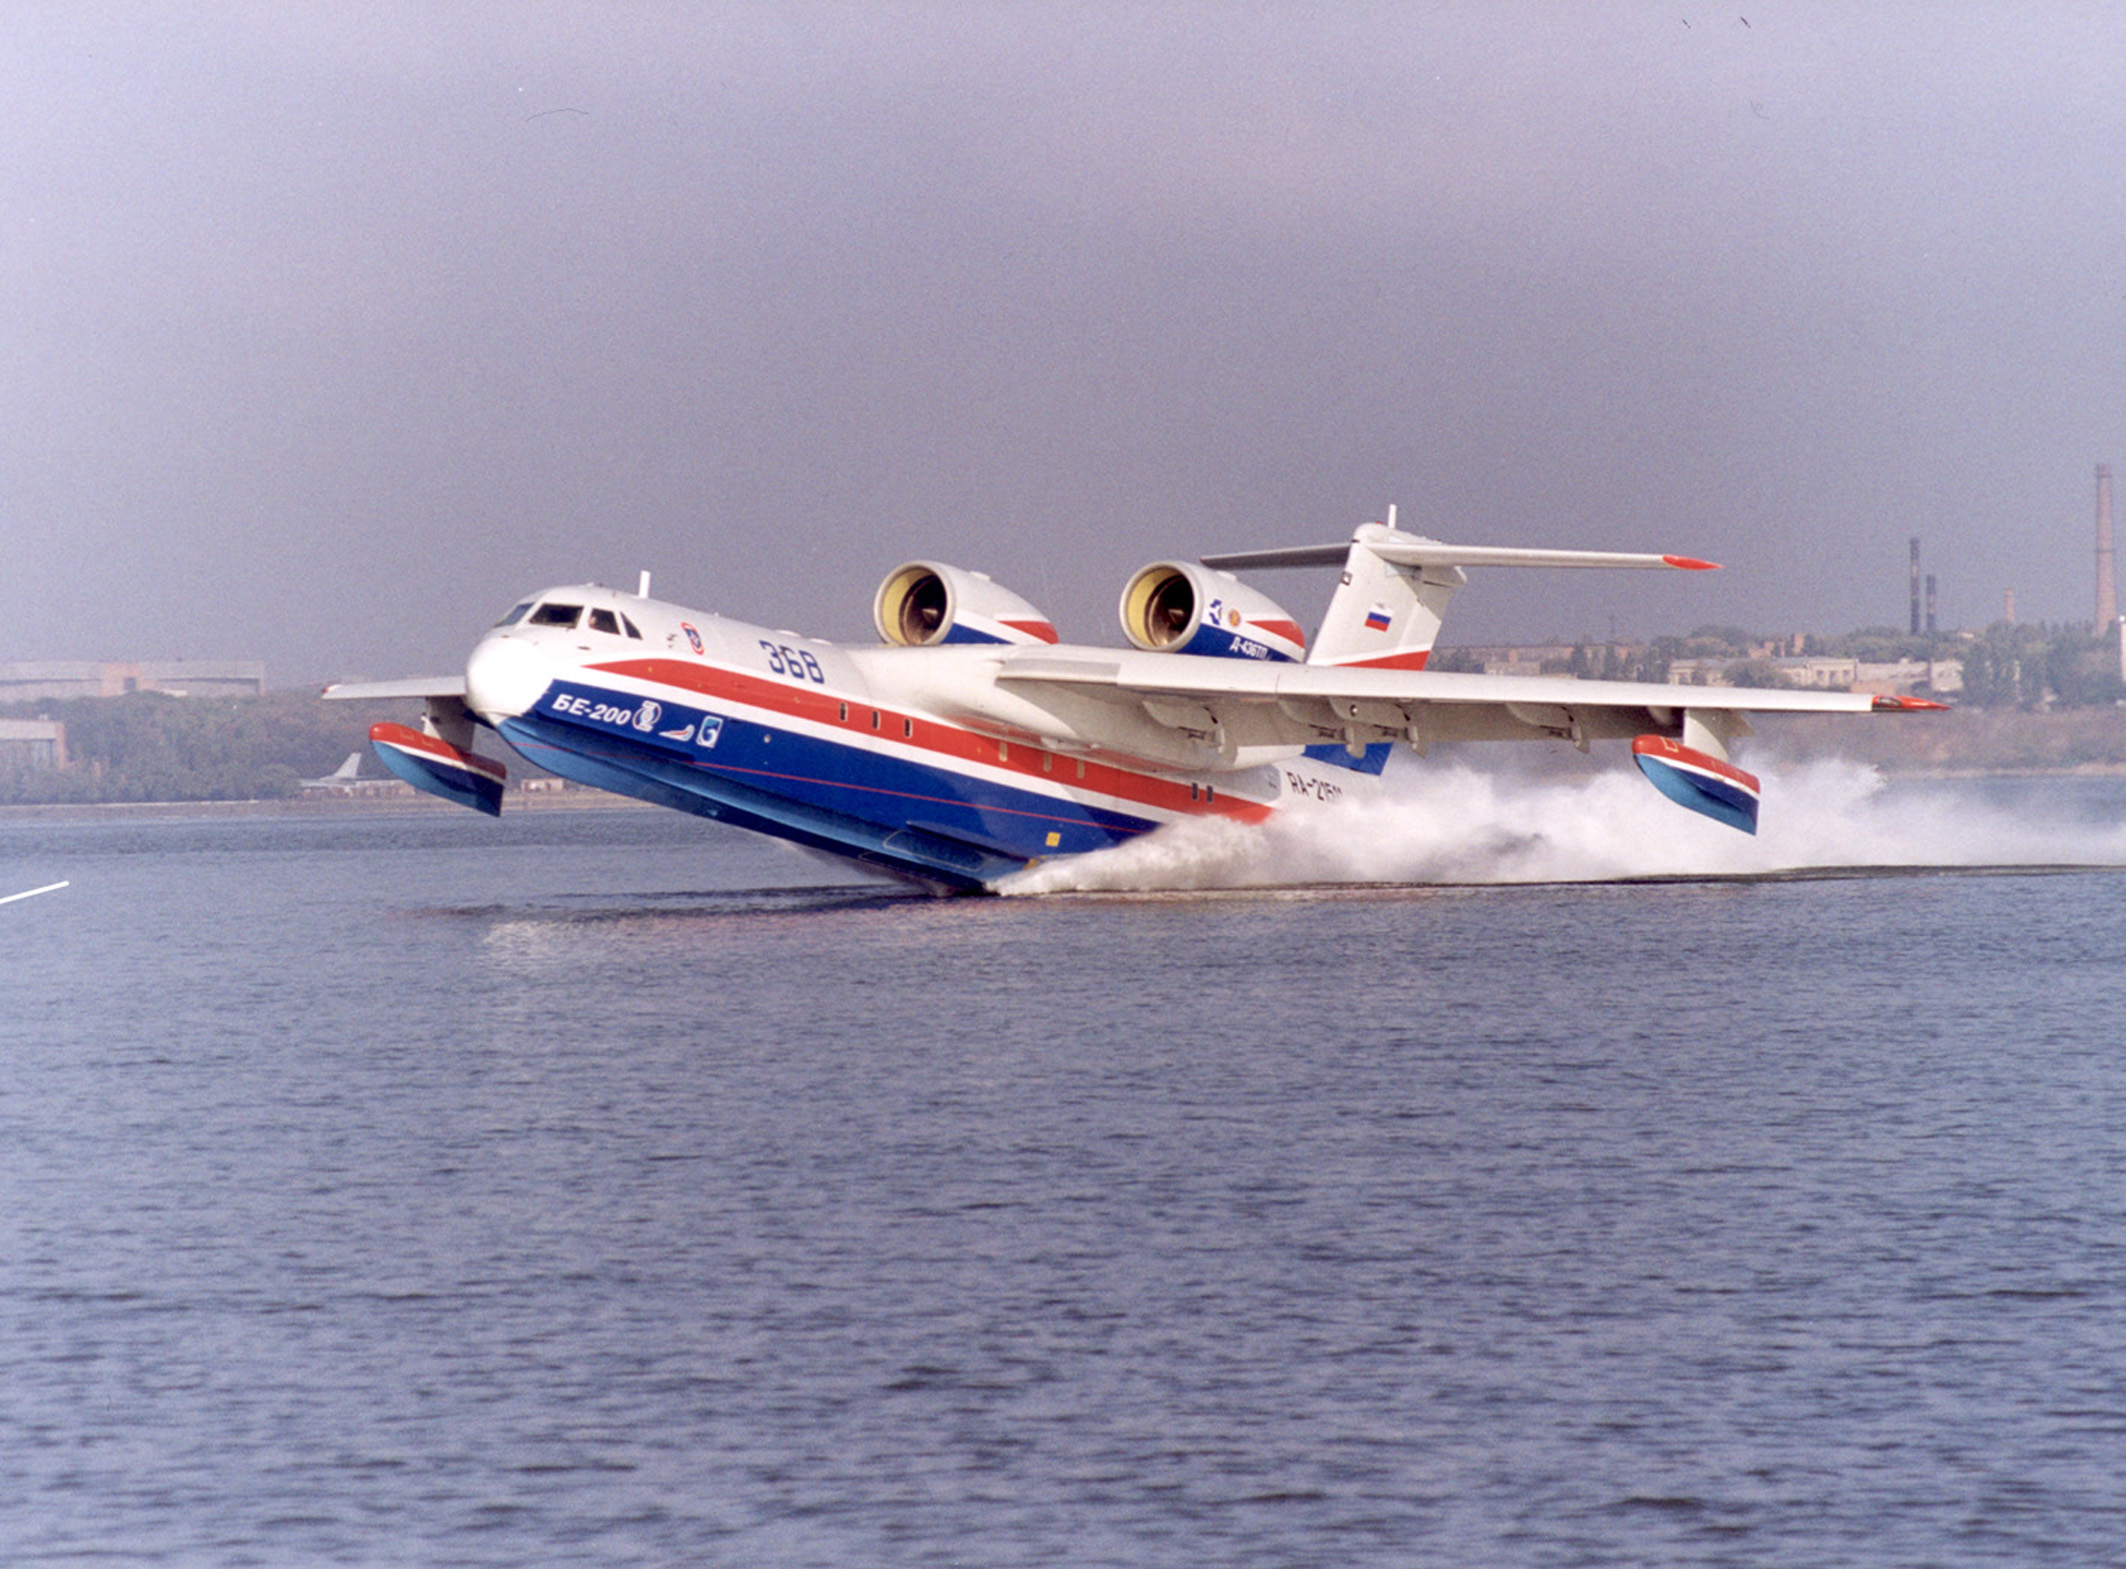 вода, самолет, транспортные средства, Бериев Бе- 200 - обои на рабочий стол